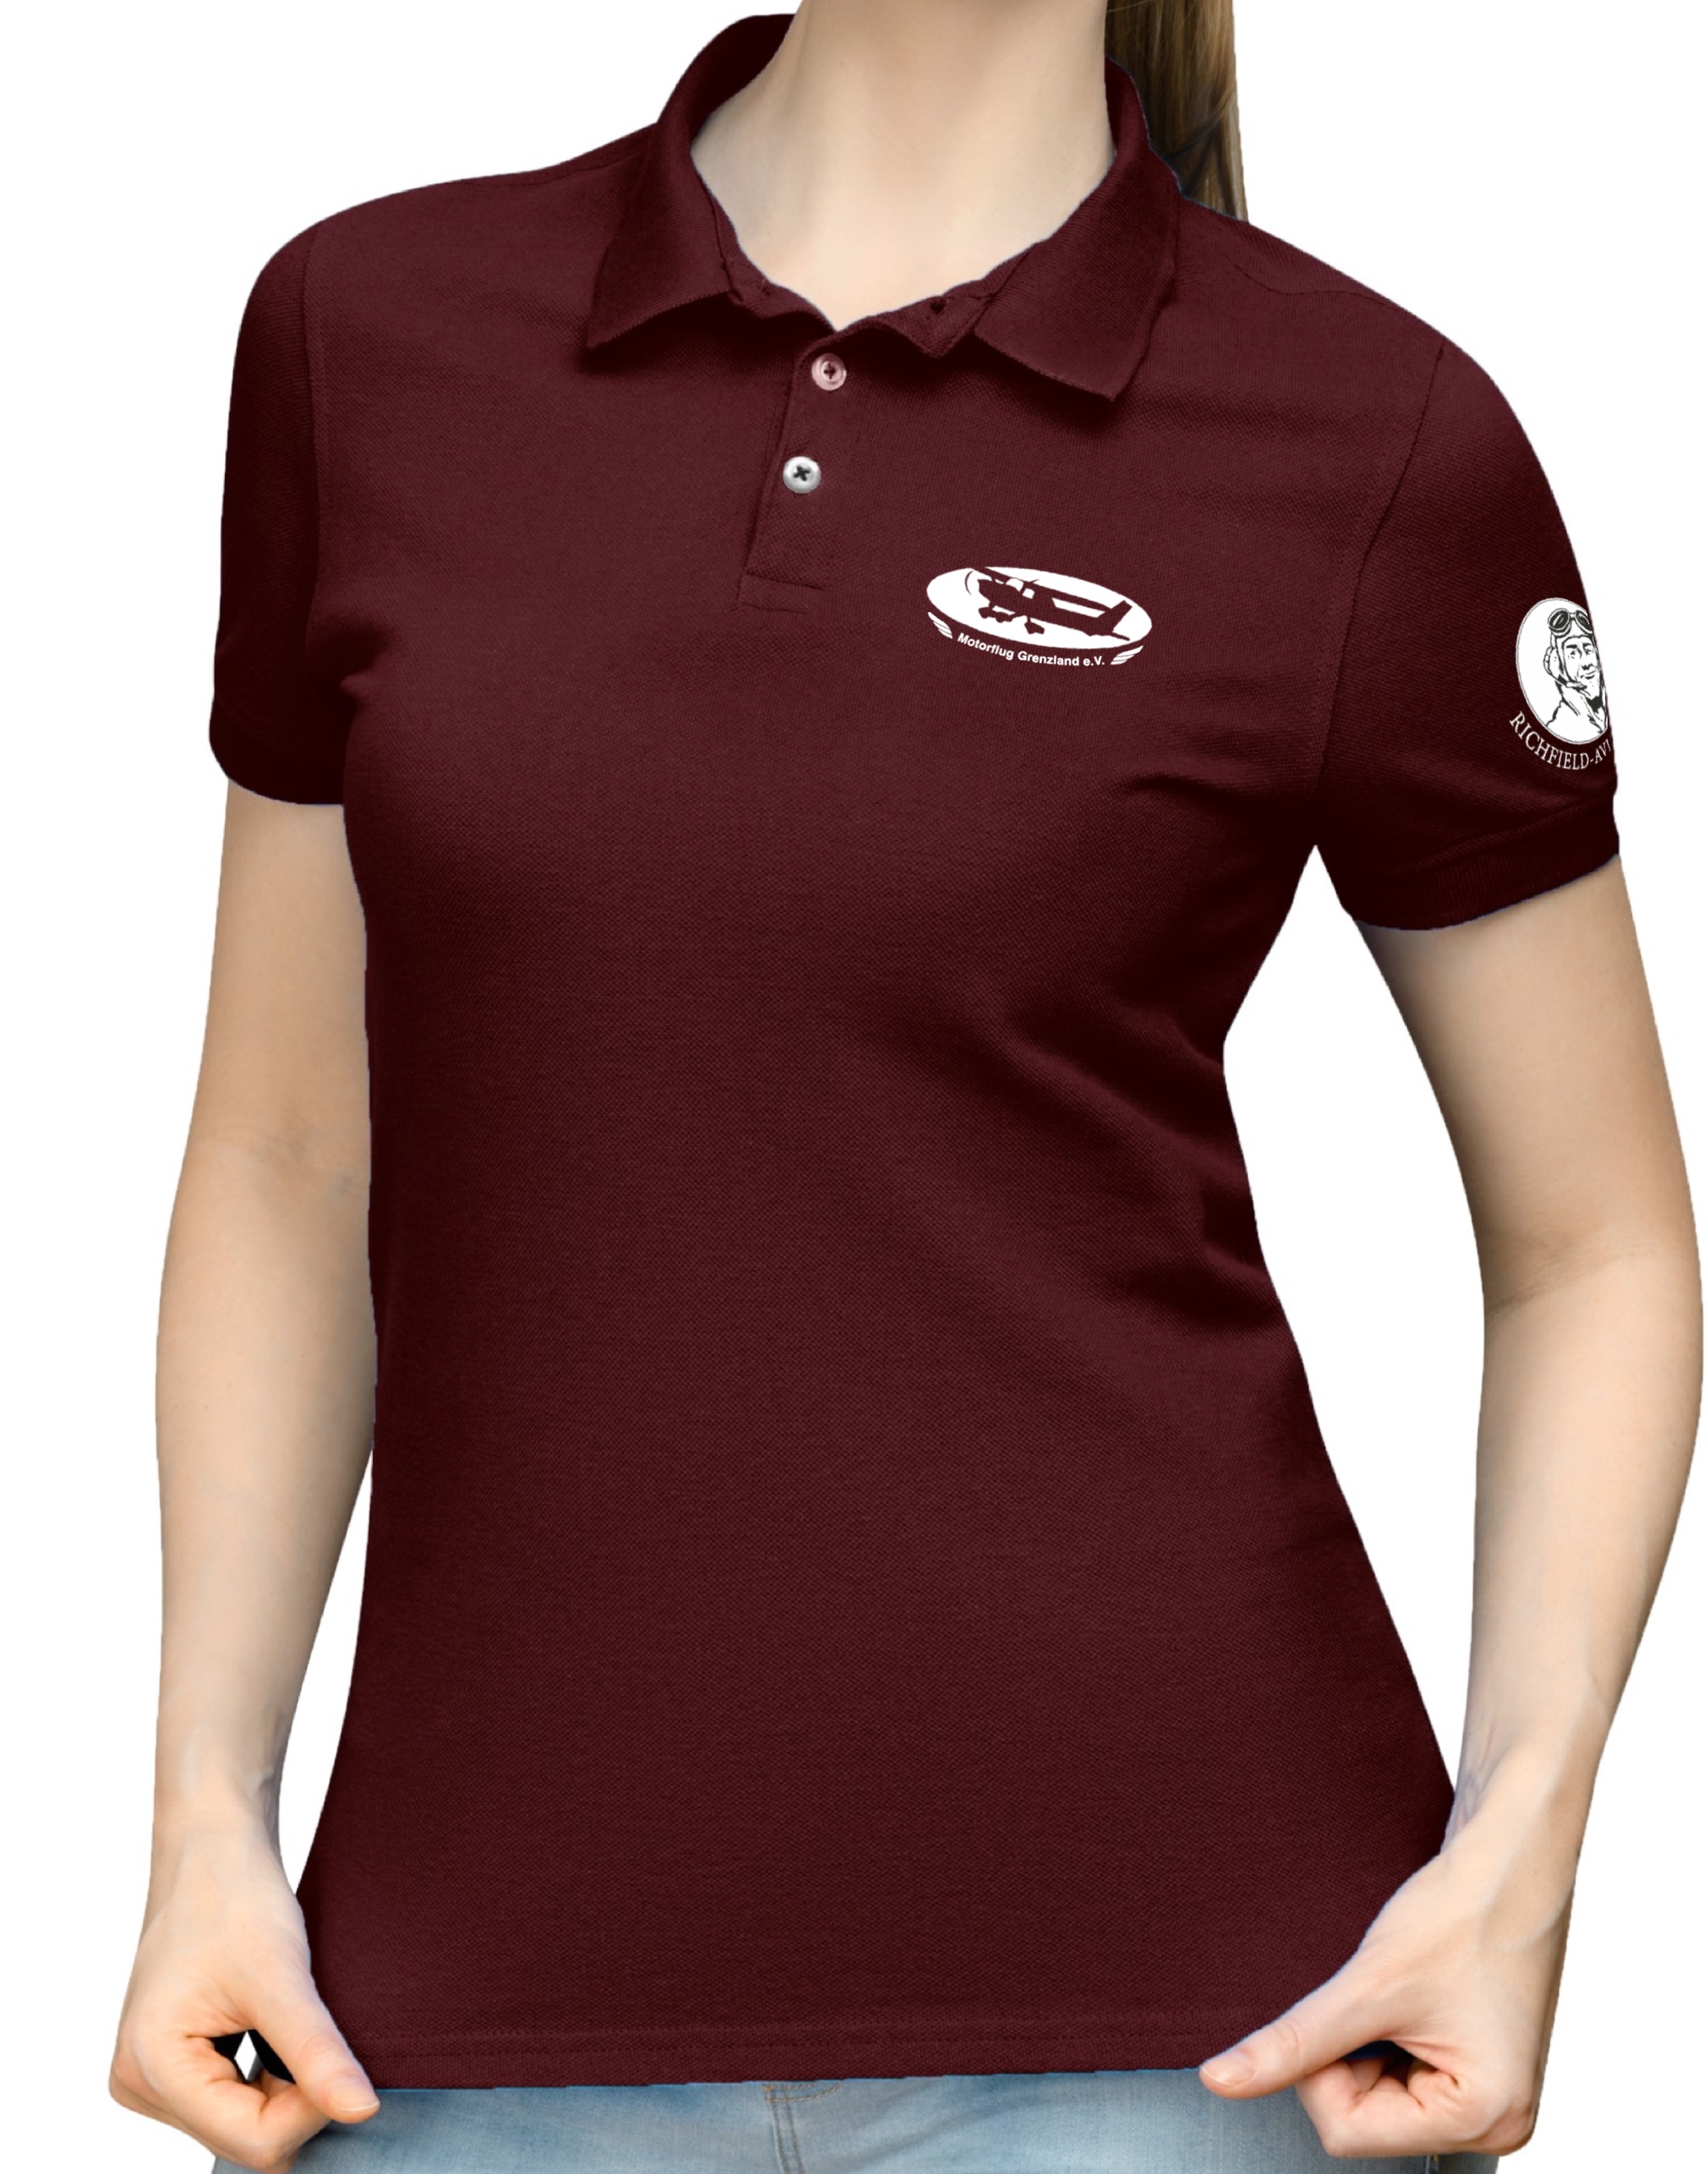 Damen Polo-Shirt MFG Grenzland e.V.